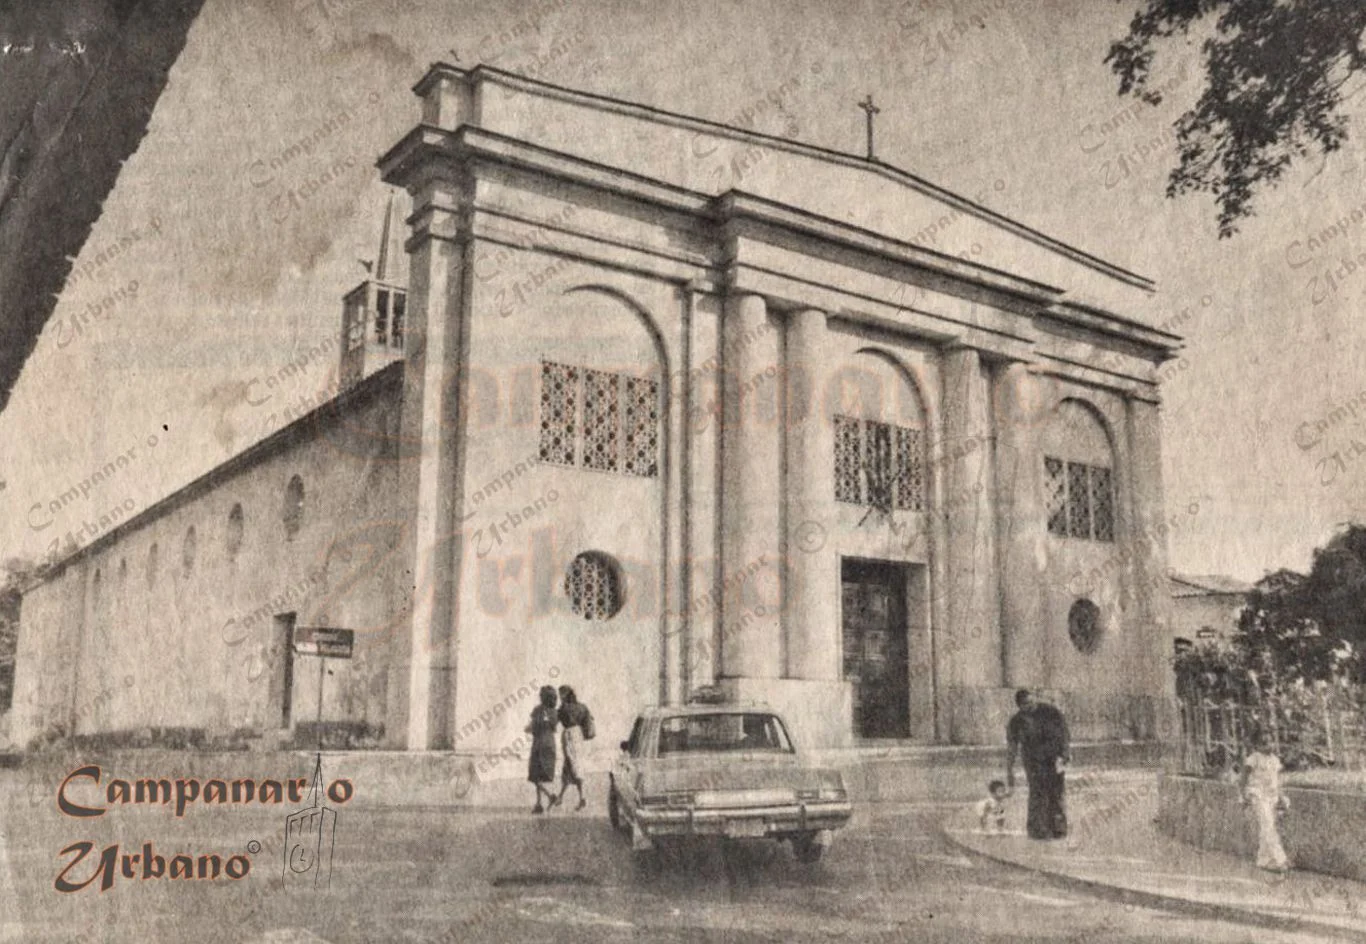 Esquina de las calles Régulo Fránquiz y Ambrosio Plaza, Guarenas, año 1976. En primer plano la Iglesia Nuestra Señora de Copacabana.